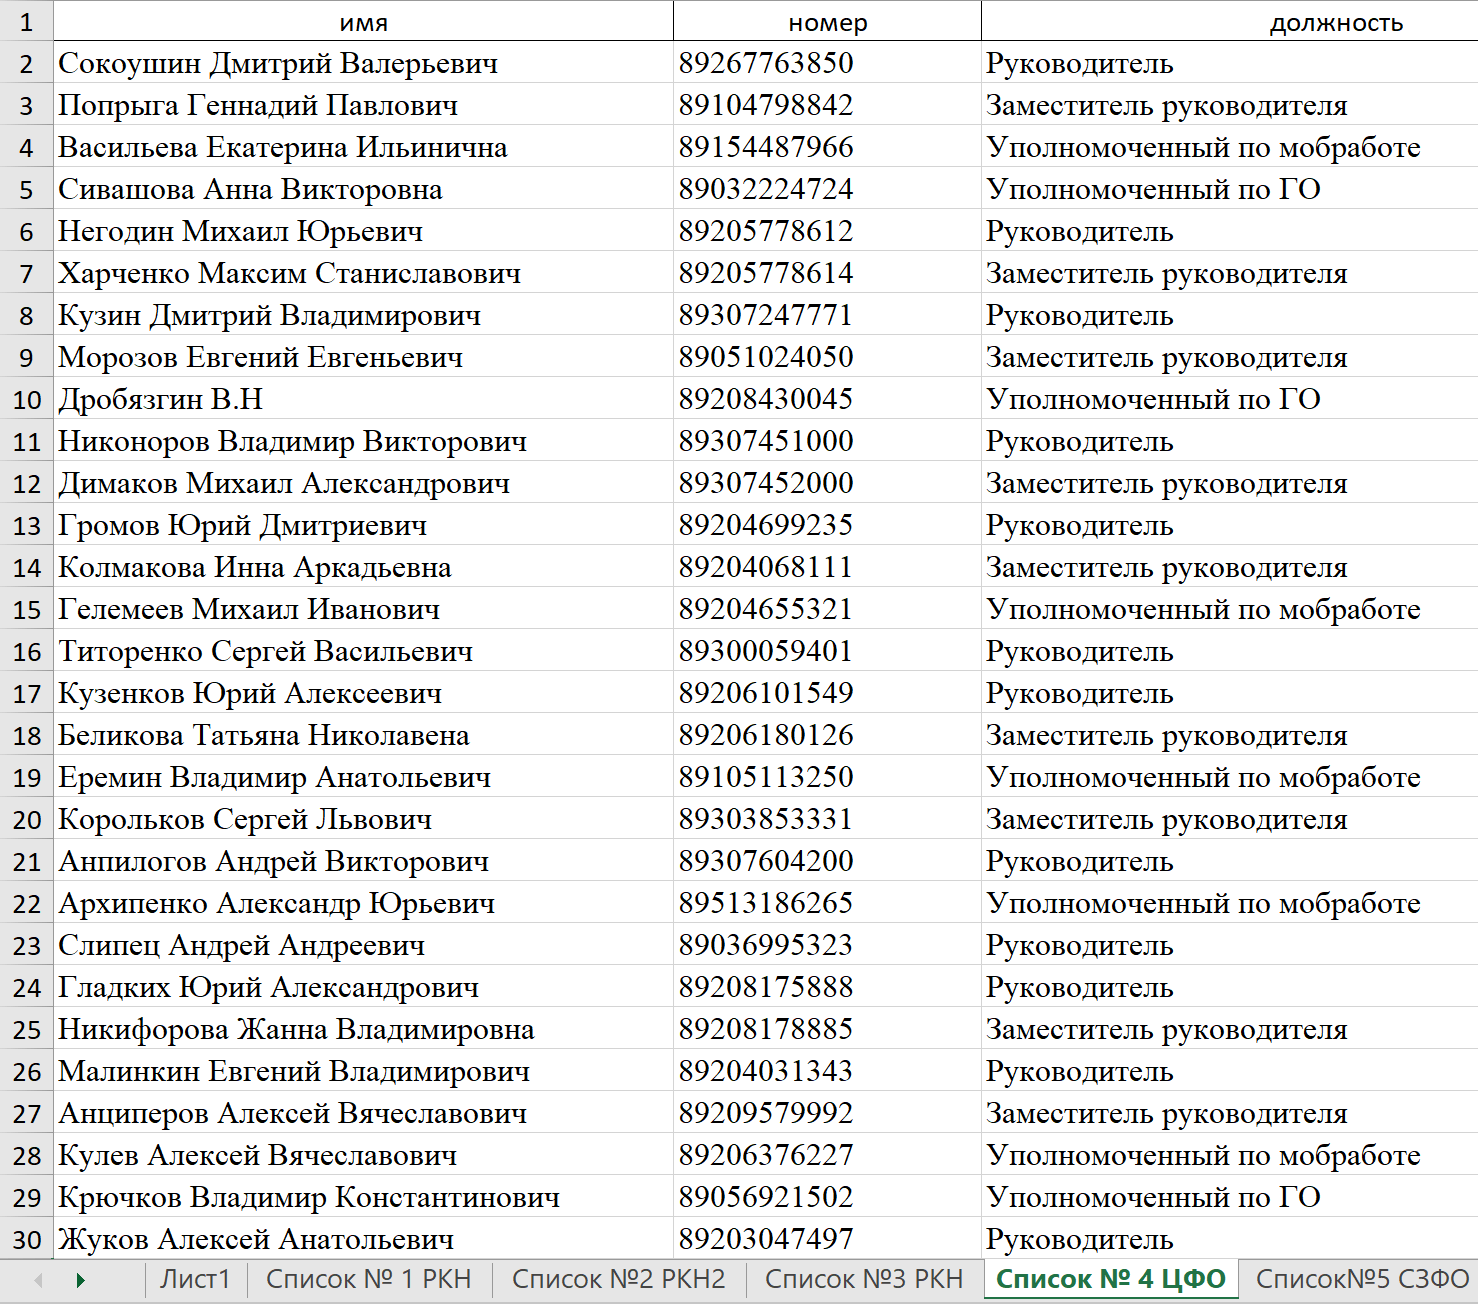 Список сотрудников Роскомнадзора (август 2022)